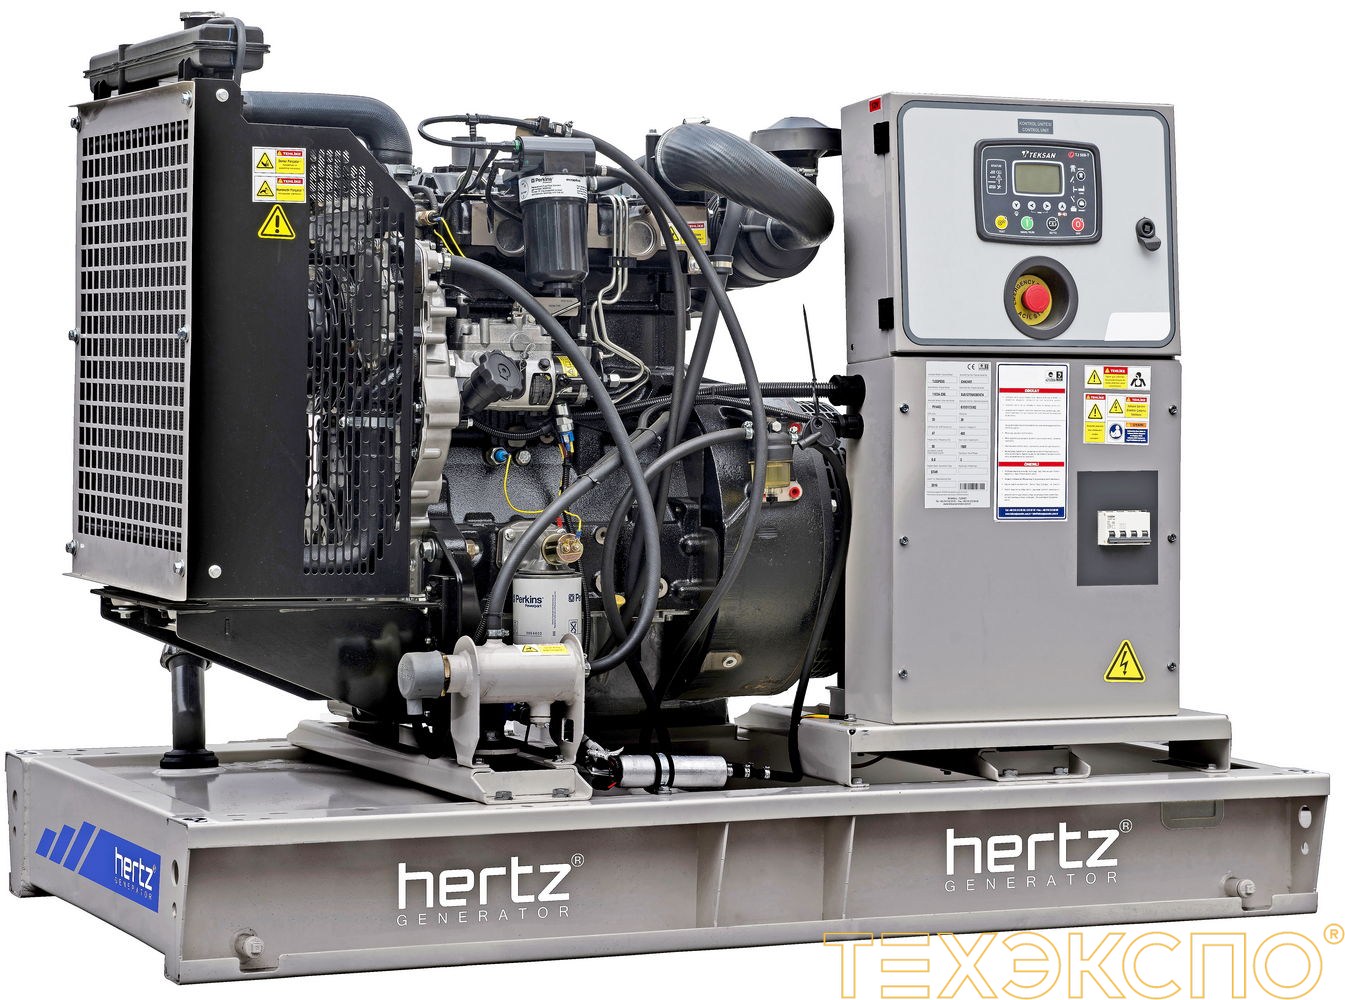 HERTZ HG200PL - ДЭС 145 кВт в Санкт-Петербурге за 3 208 918 рублей | Дизельная электростанция в Техэкспо